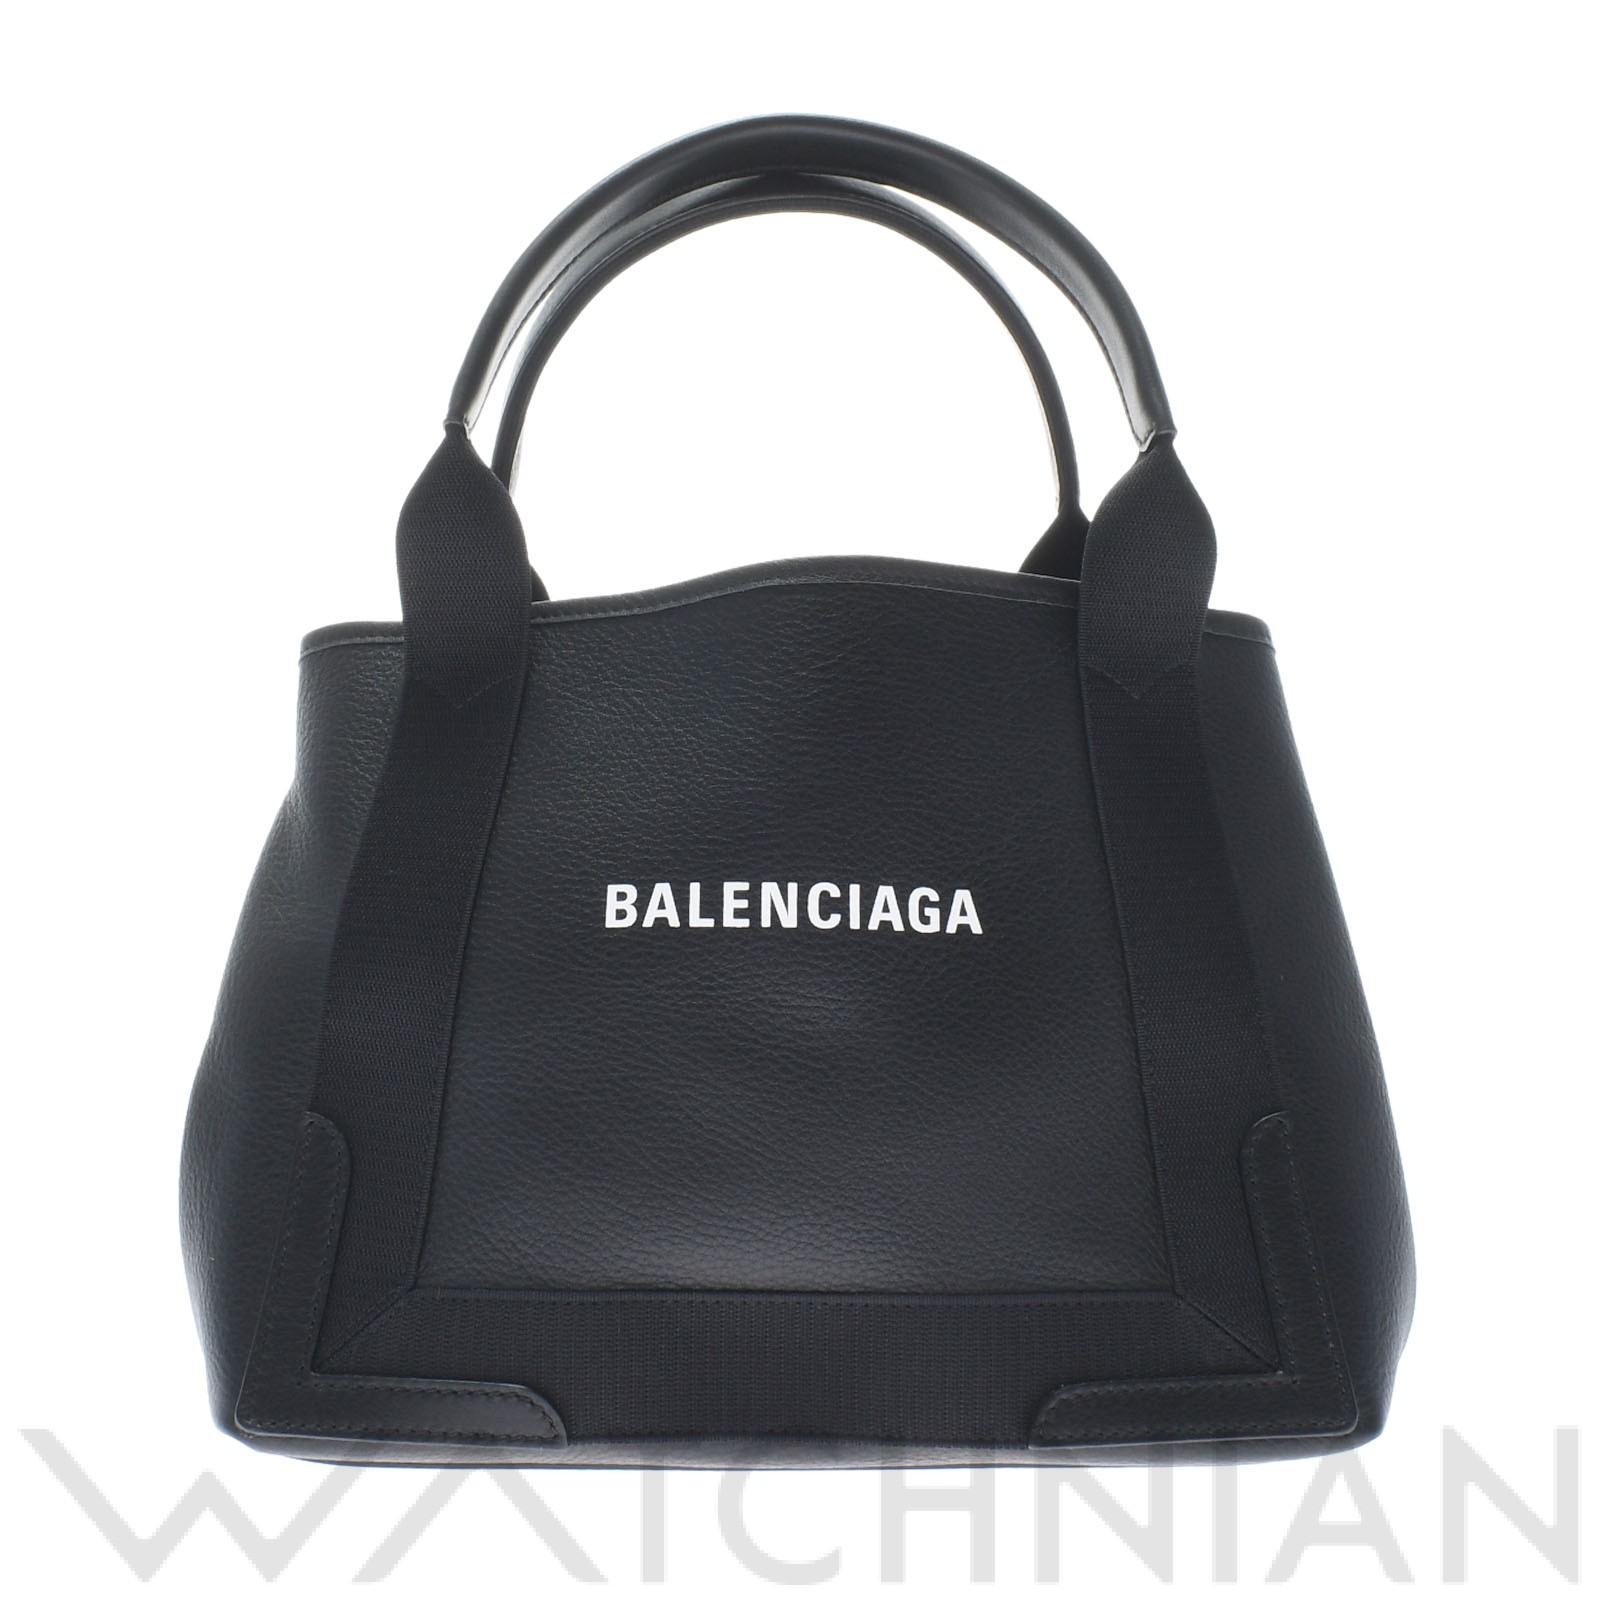 バレンシアガ / BALENCIAGA ネイビーカバS 黒 339933 レザー レディース バッグ 【未使用】【bag】